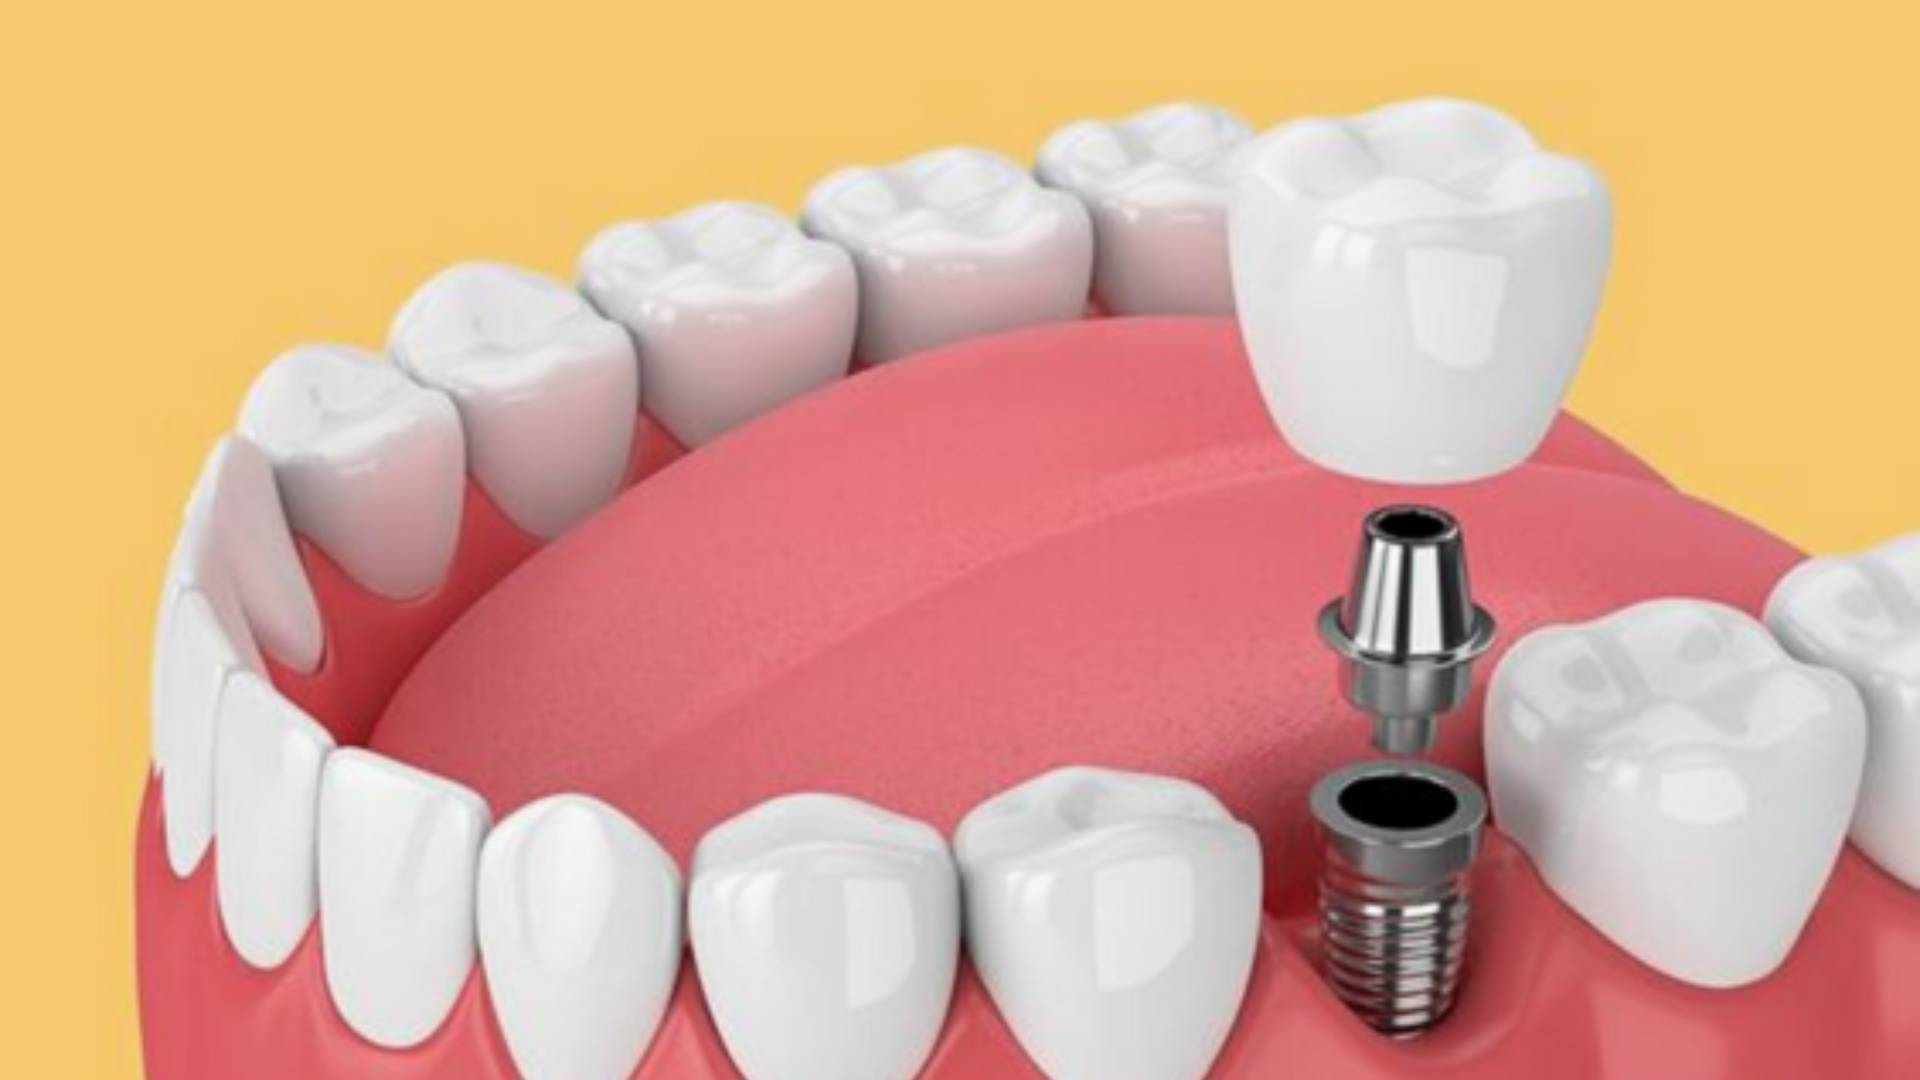 trồng răng implant bao lâu thì lành - 5